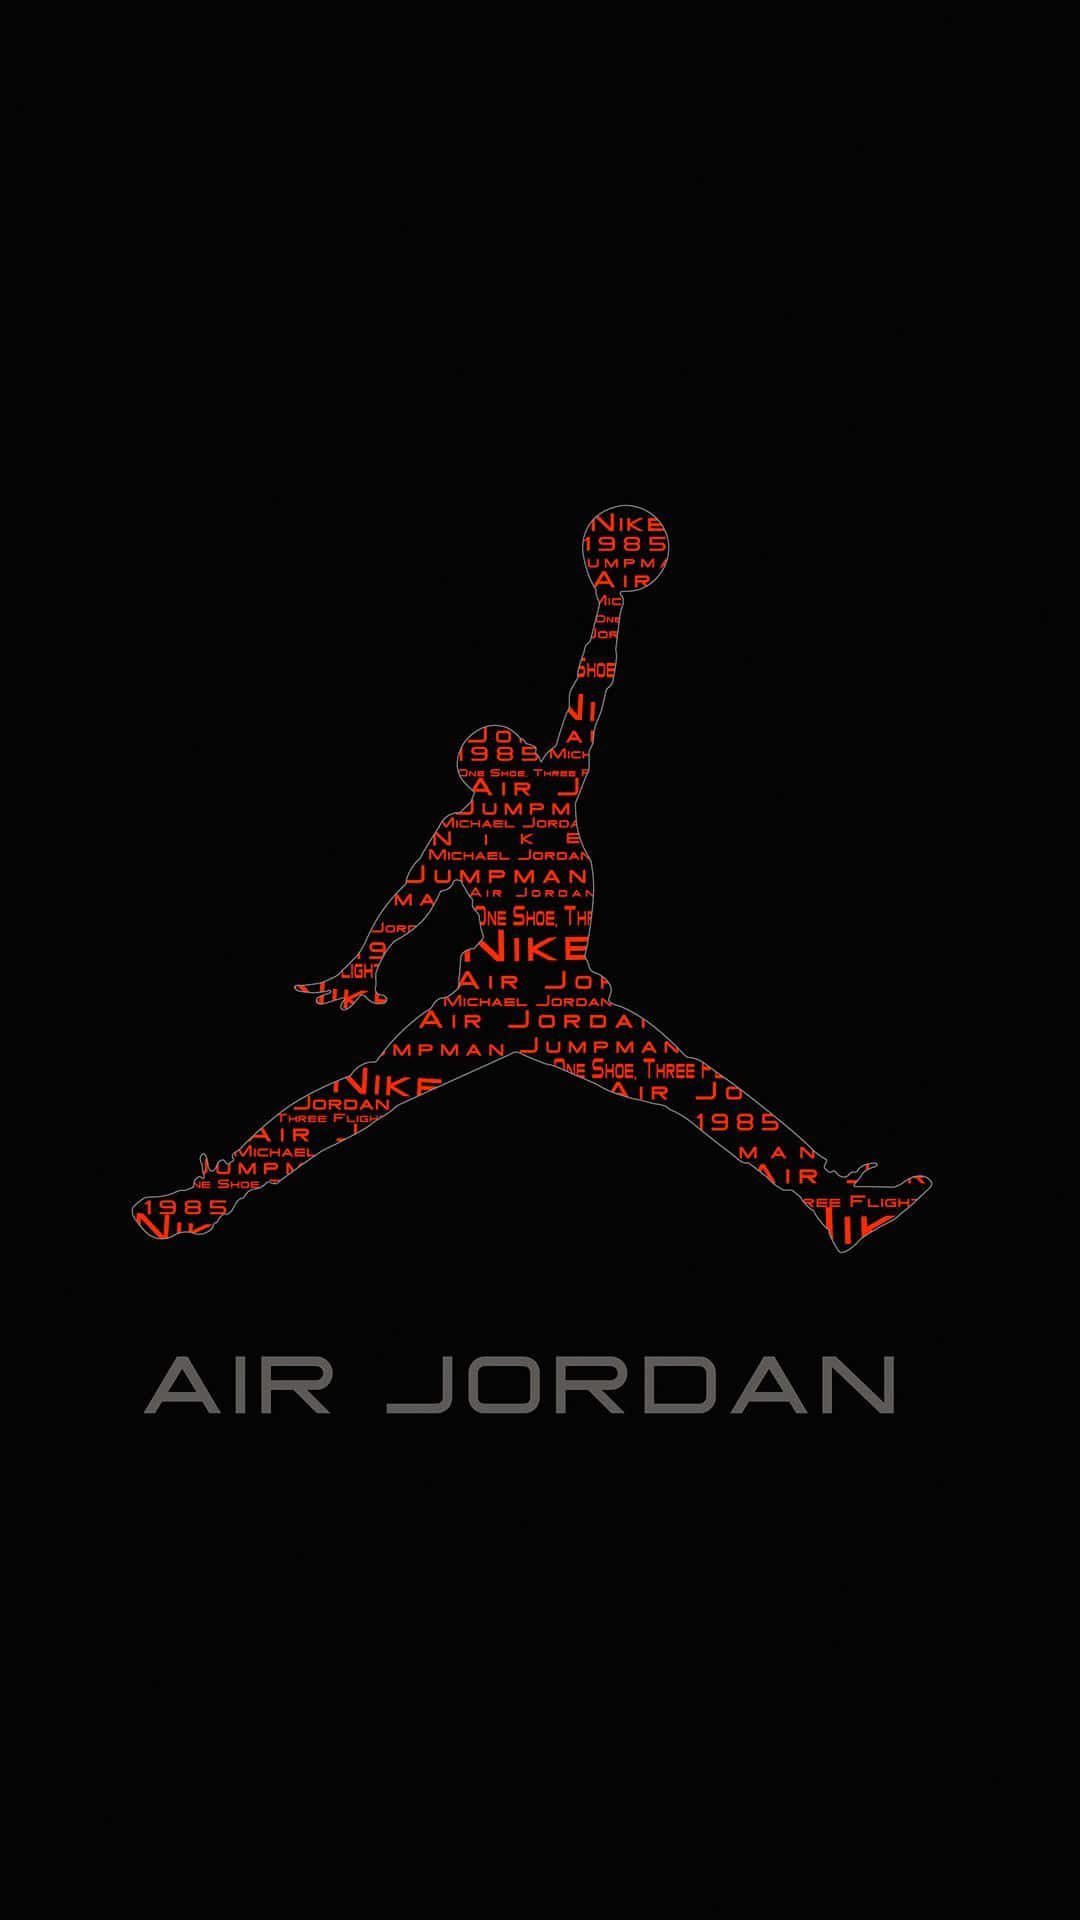 Aktualisieredeine Sneaker-sammlung Mit Dem Zeitlosen Klassiker Nike Air Jordan. Wallpaper